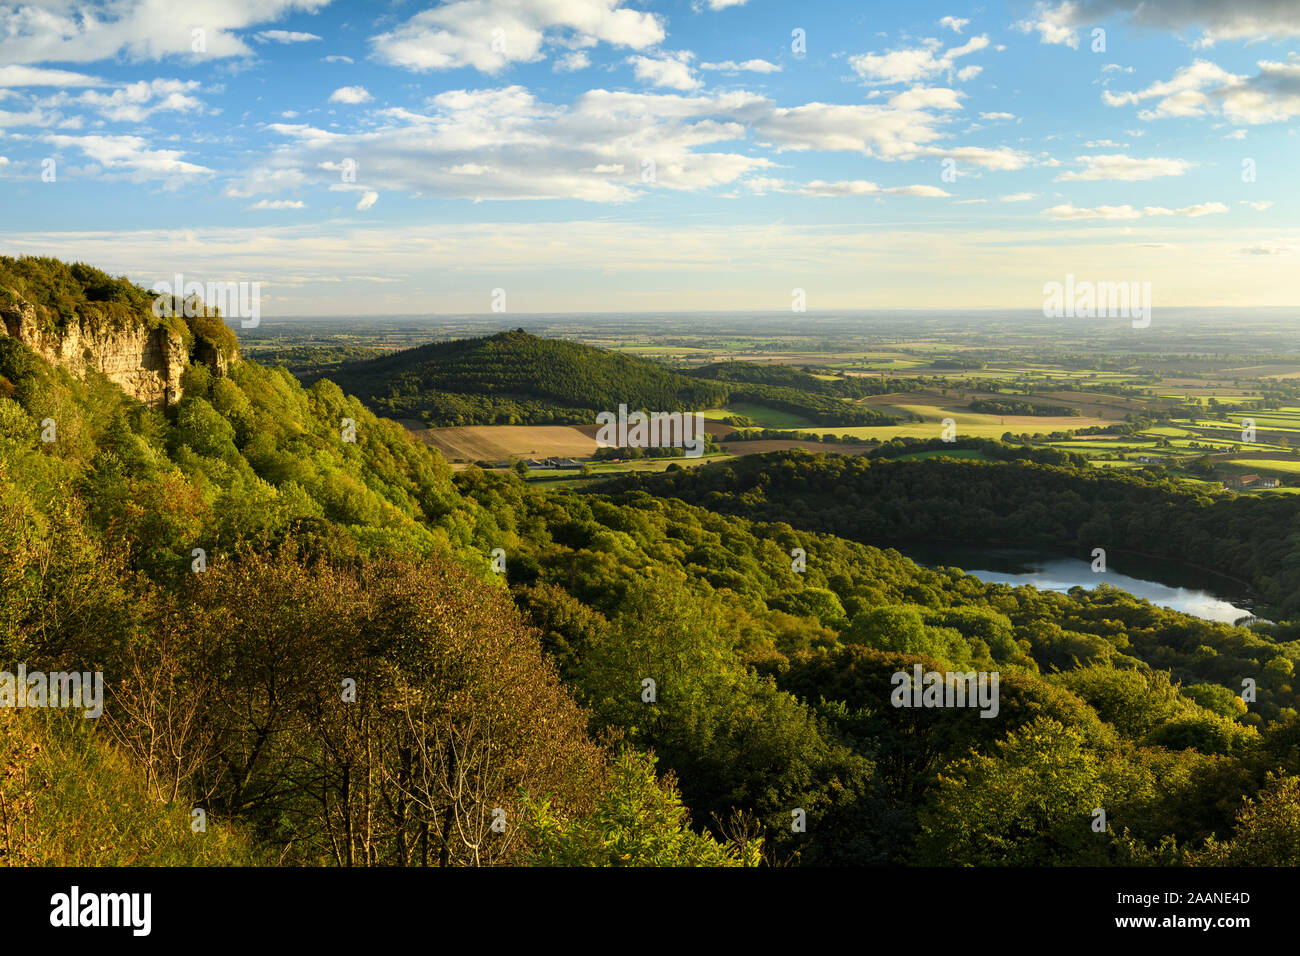 Belles vue à longue distance (Lac Gormire, Hood Hill, Whitestone Falaise, campagne & Ciel bleu) - Banque mondiale, North Yorkshire, Angleterre, Royaume-Uni. Banque D'Images